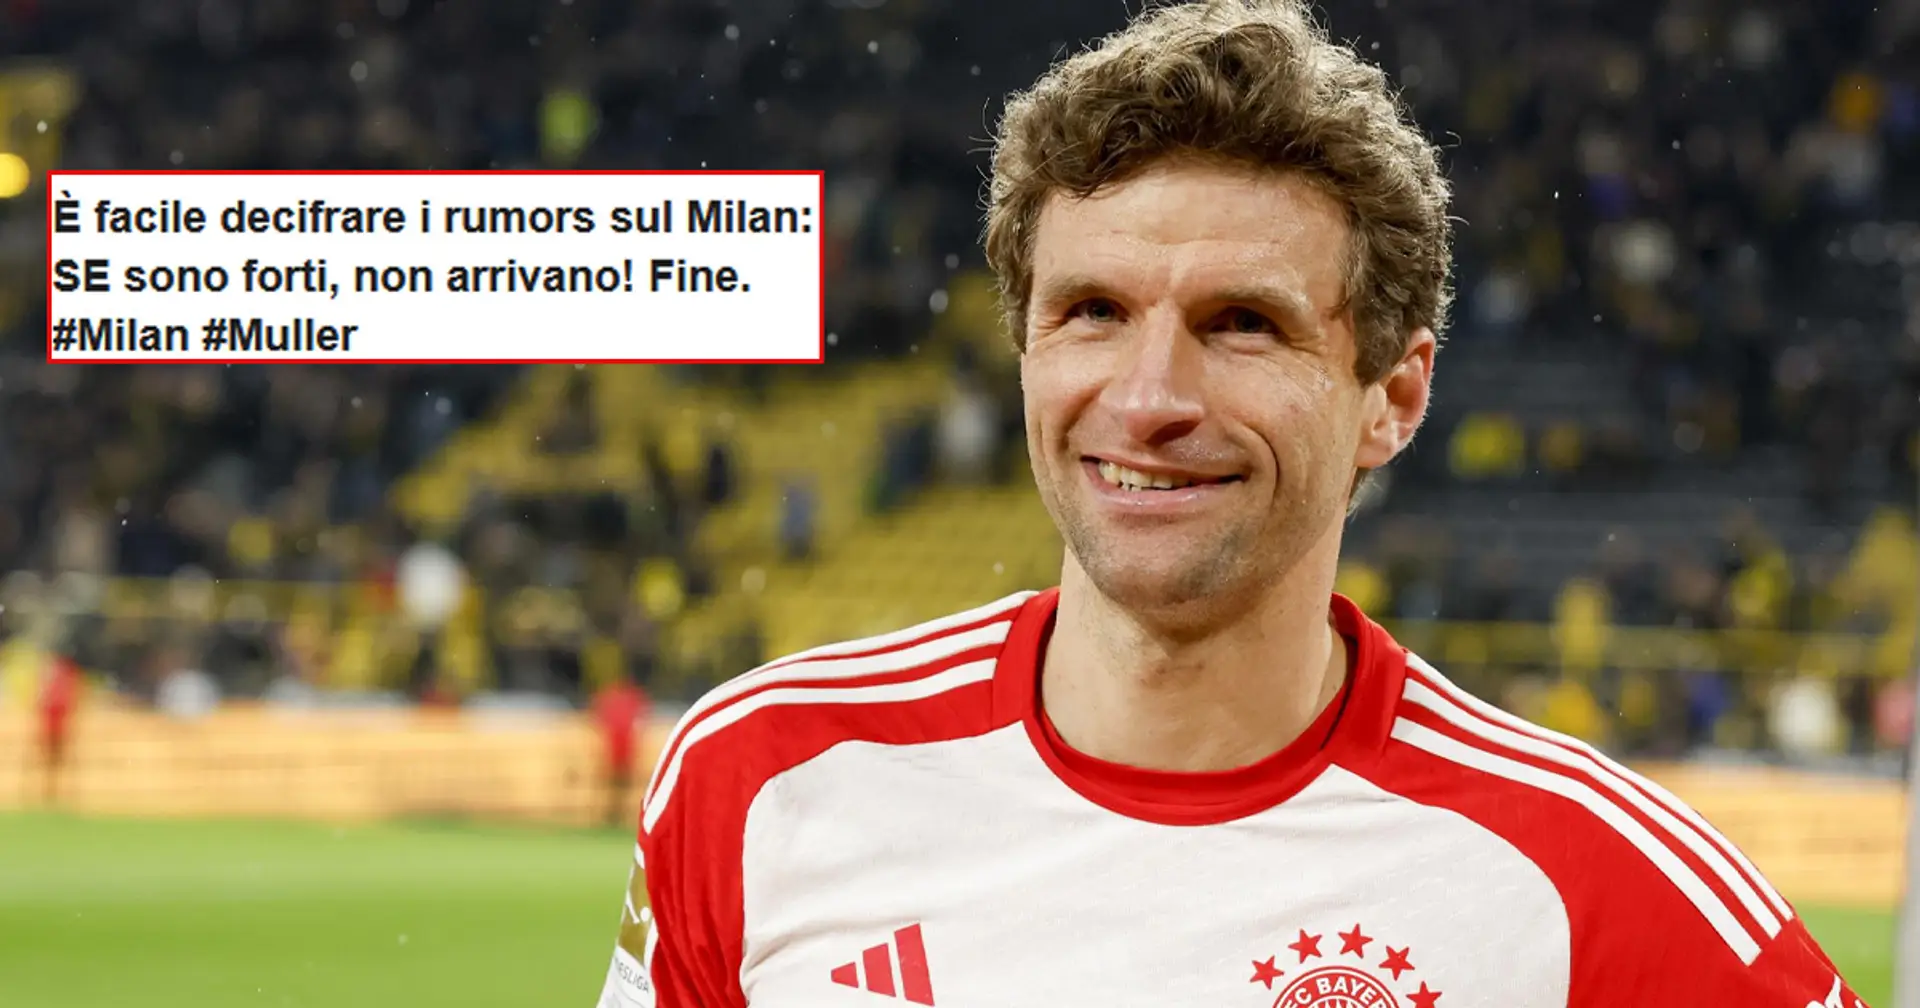 Muller rinnova col Bayern, era stato accostato al Milan! Sui social l'ironia dei tifosi: "18 anni sconosciuti, o niente"